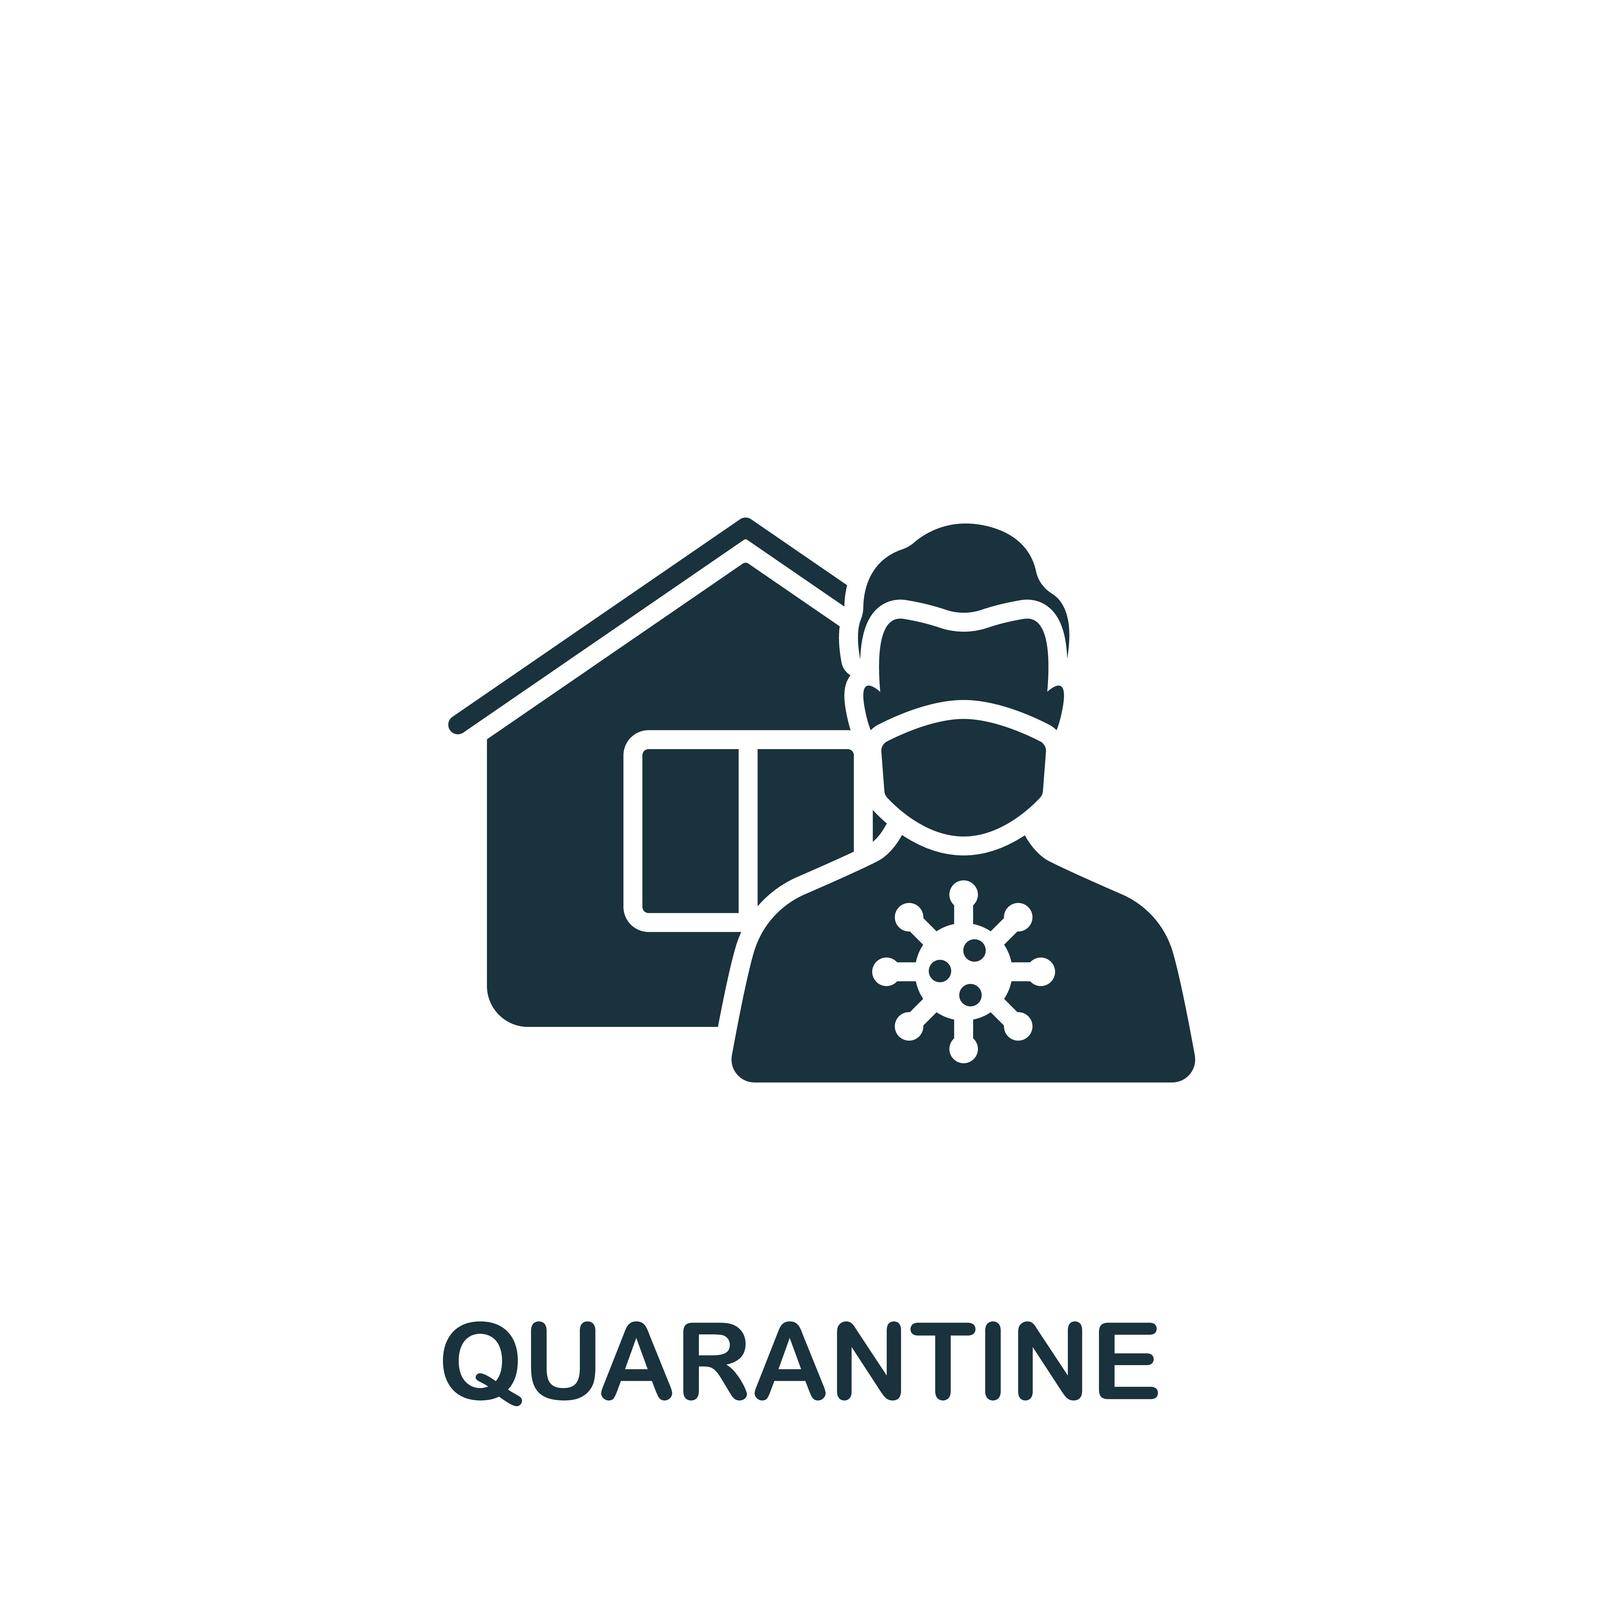 Quarantine icon. Simple line element quarantine symbol for templates, web design and infographics.